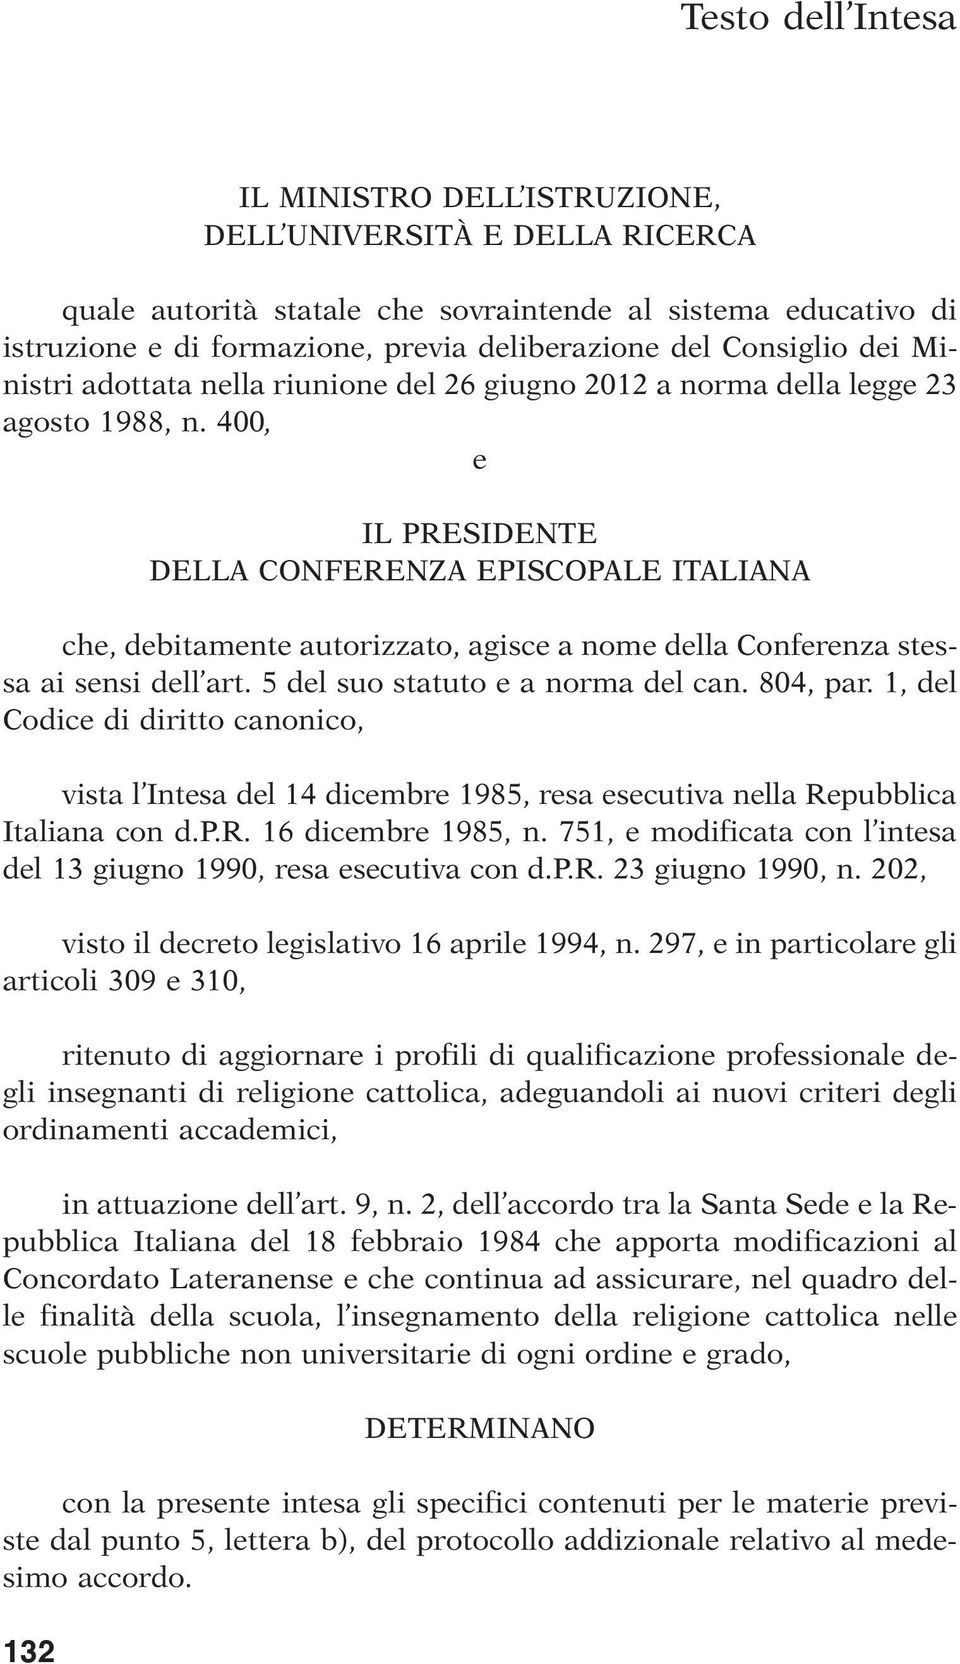 400, e IL PRESIDENTE DELLA CONFERENZA EPISCOPALE ITALIANA che, debitamente autorizzato, agisce a nome della Conferenza stessa ai sensi dell art. 5 del suo statuto e a norma del can. 804, par.